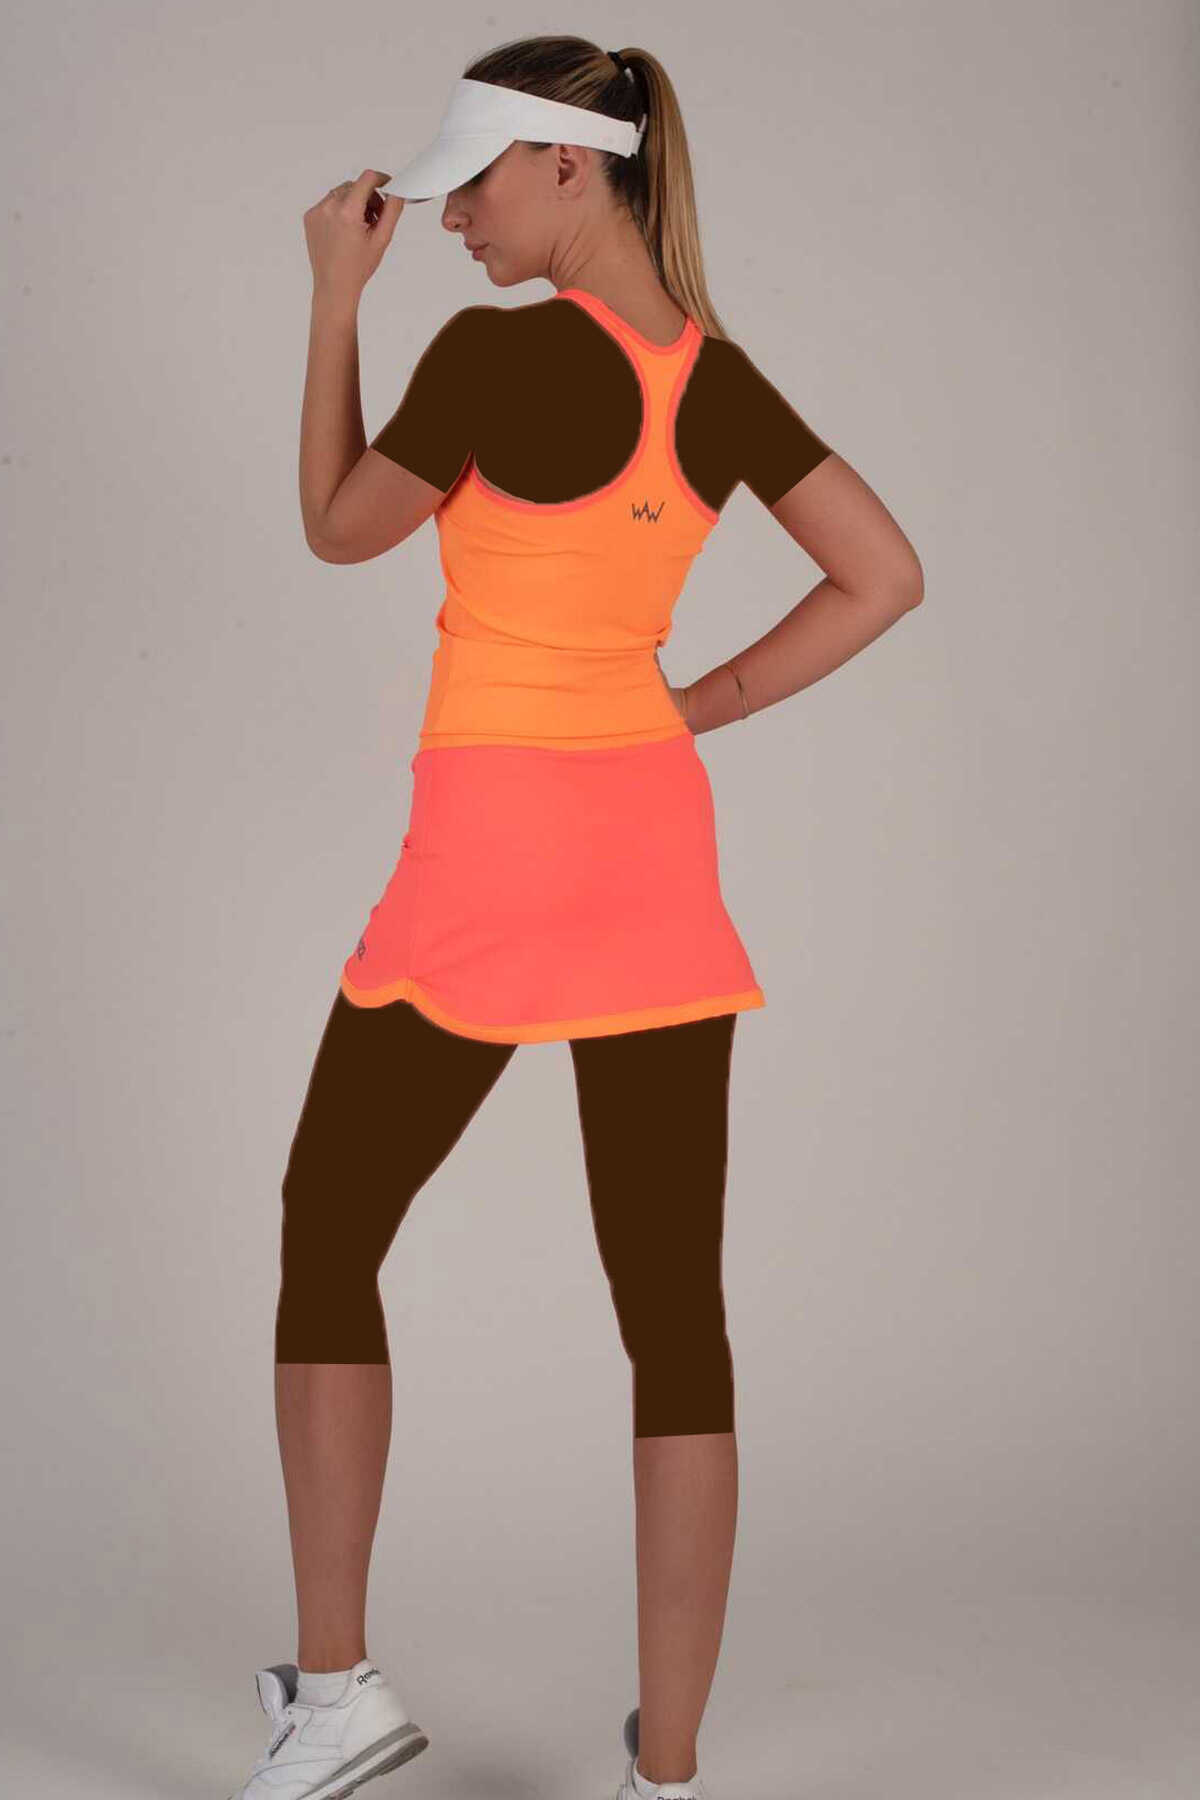 دامن تنیس زنانه چاک دار صورتی برند Whizz Activewear